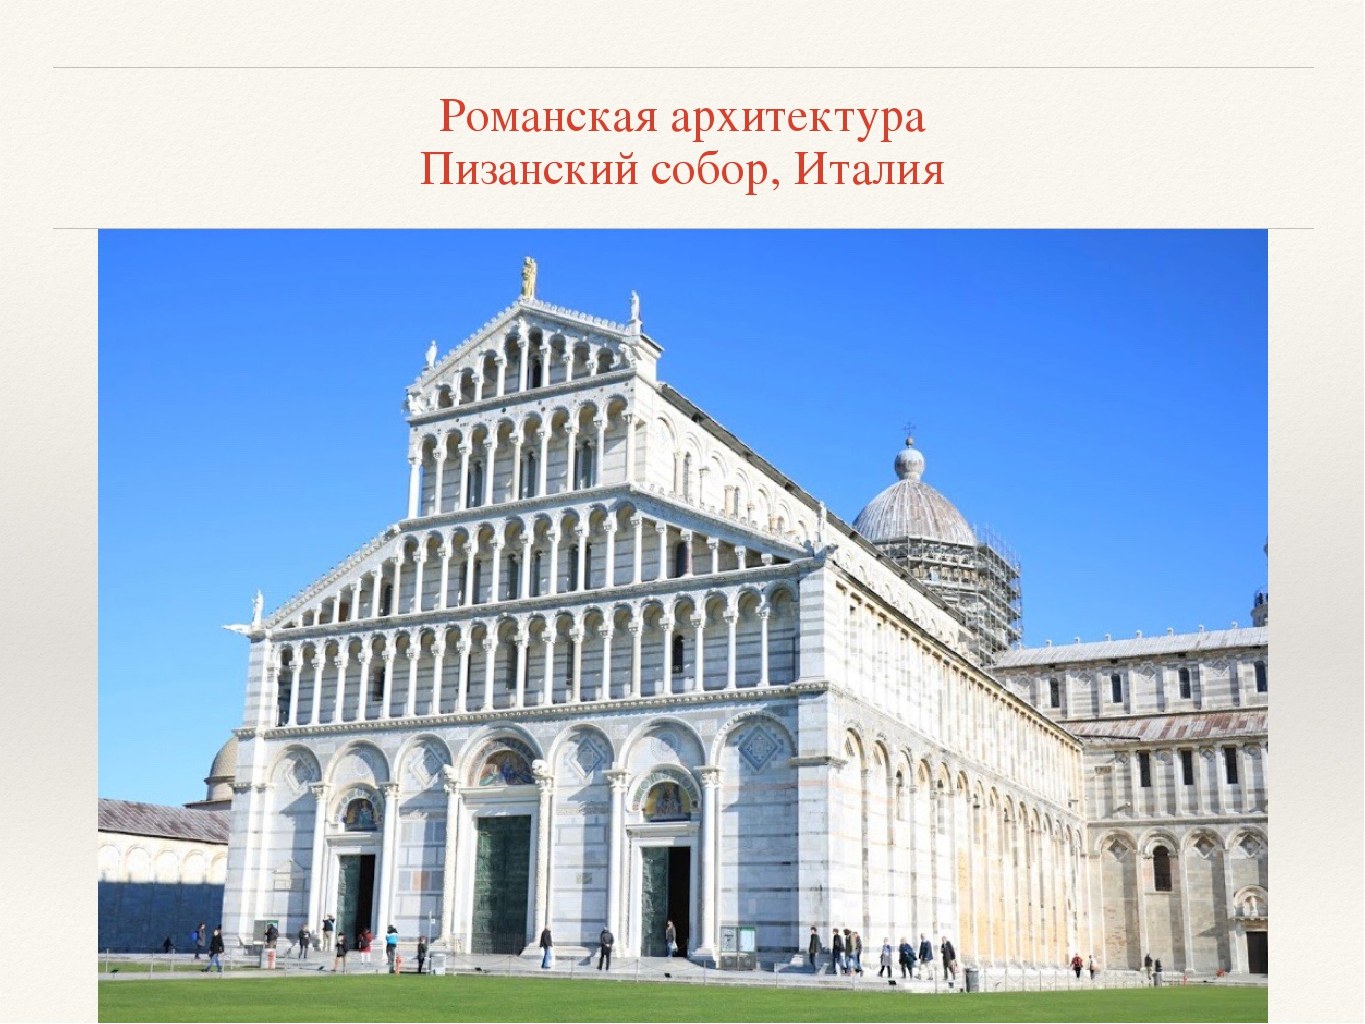 Пизанский собор Романская архитектура